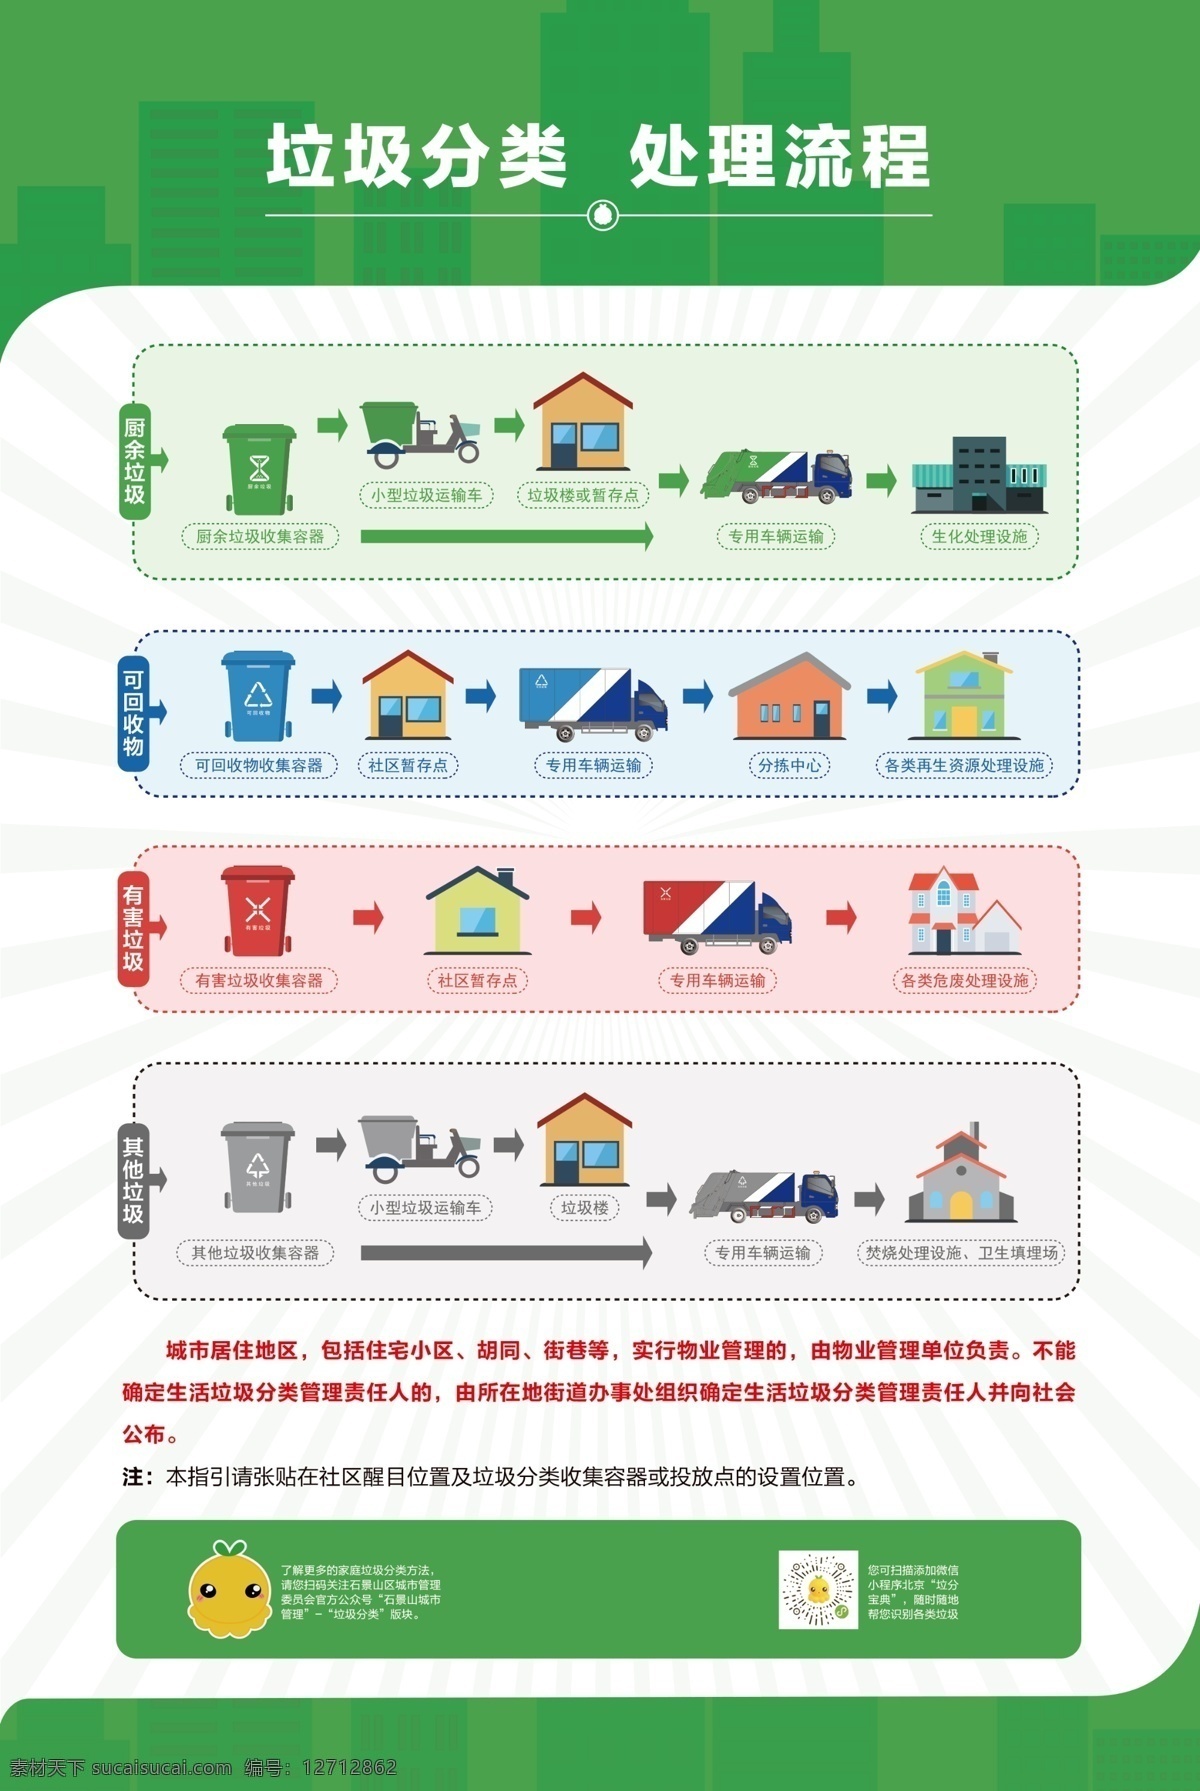 垃圾分类 处理流程 垃圾处理流程 有害垃圾 其他垃圾 垃圾处理 分层